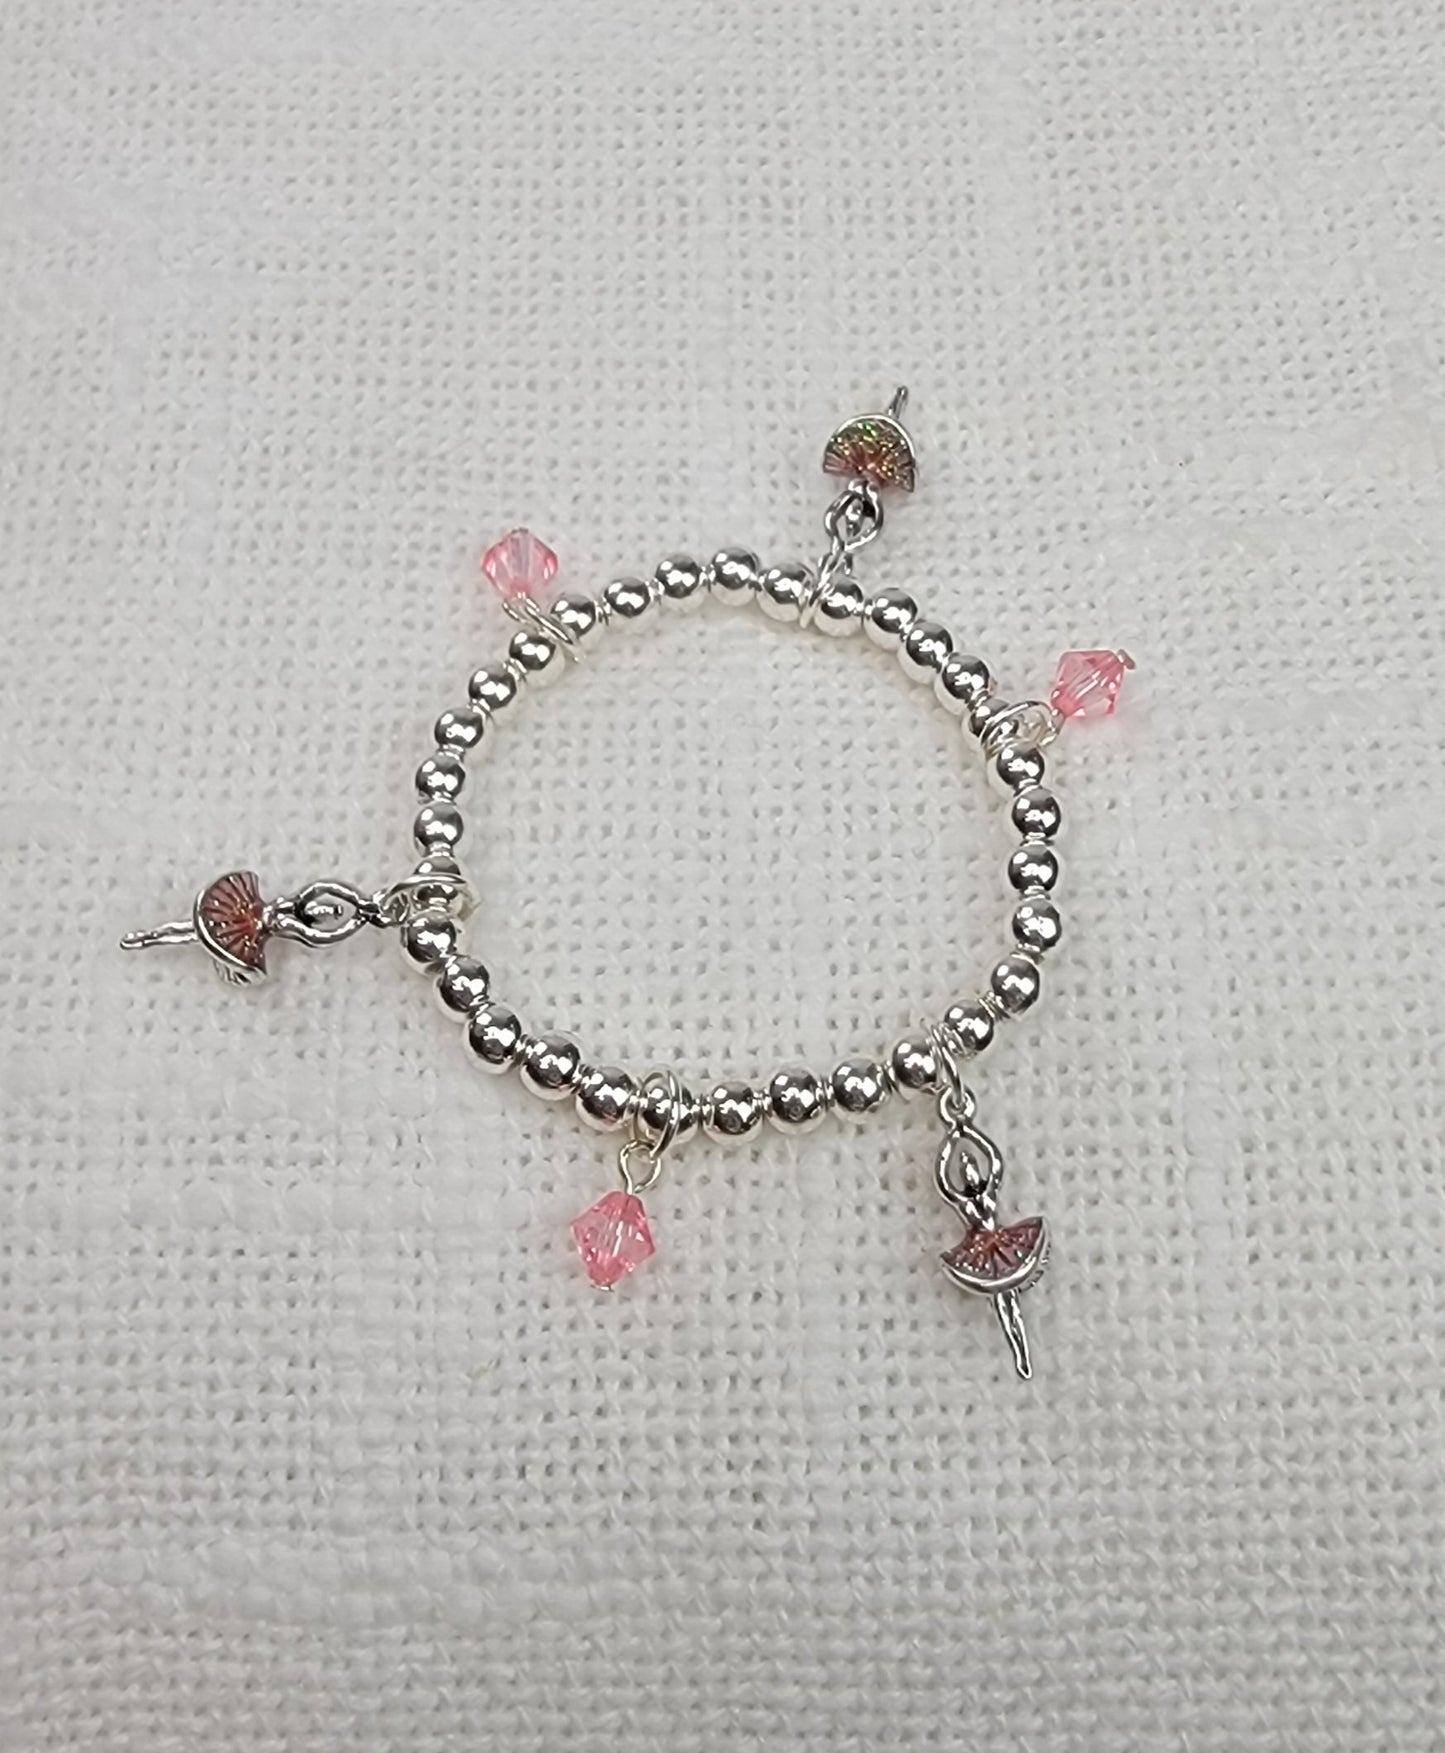 Girls Charm Jewelry: Bracelets